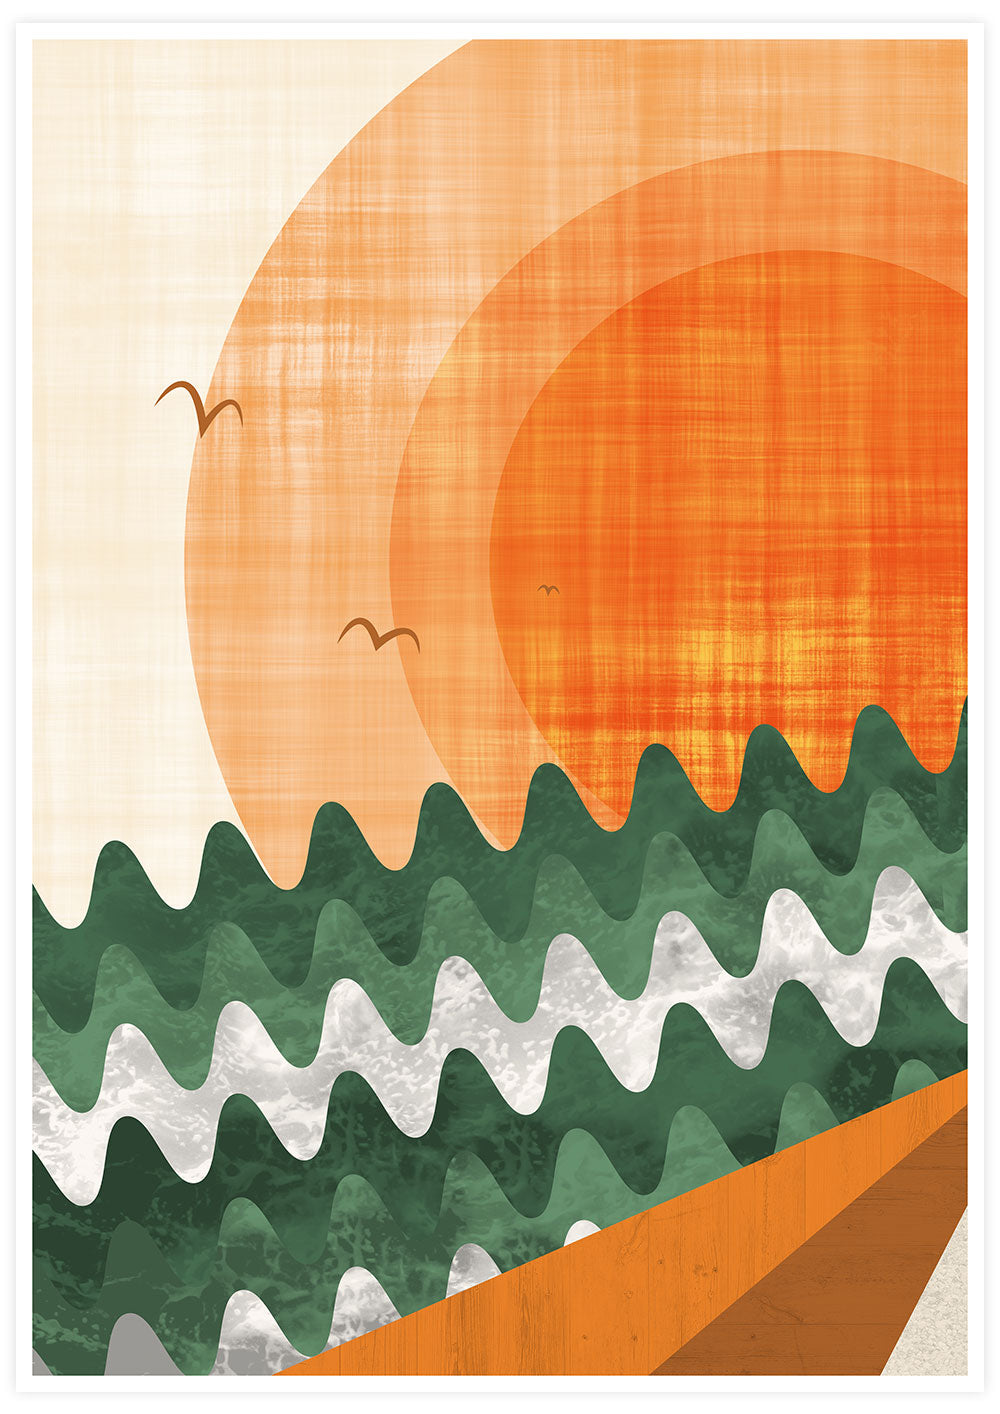 Tangerine Dream Art Poster